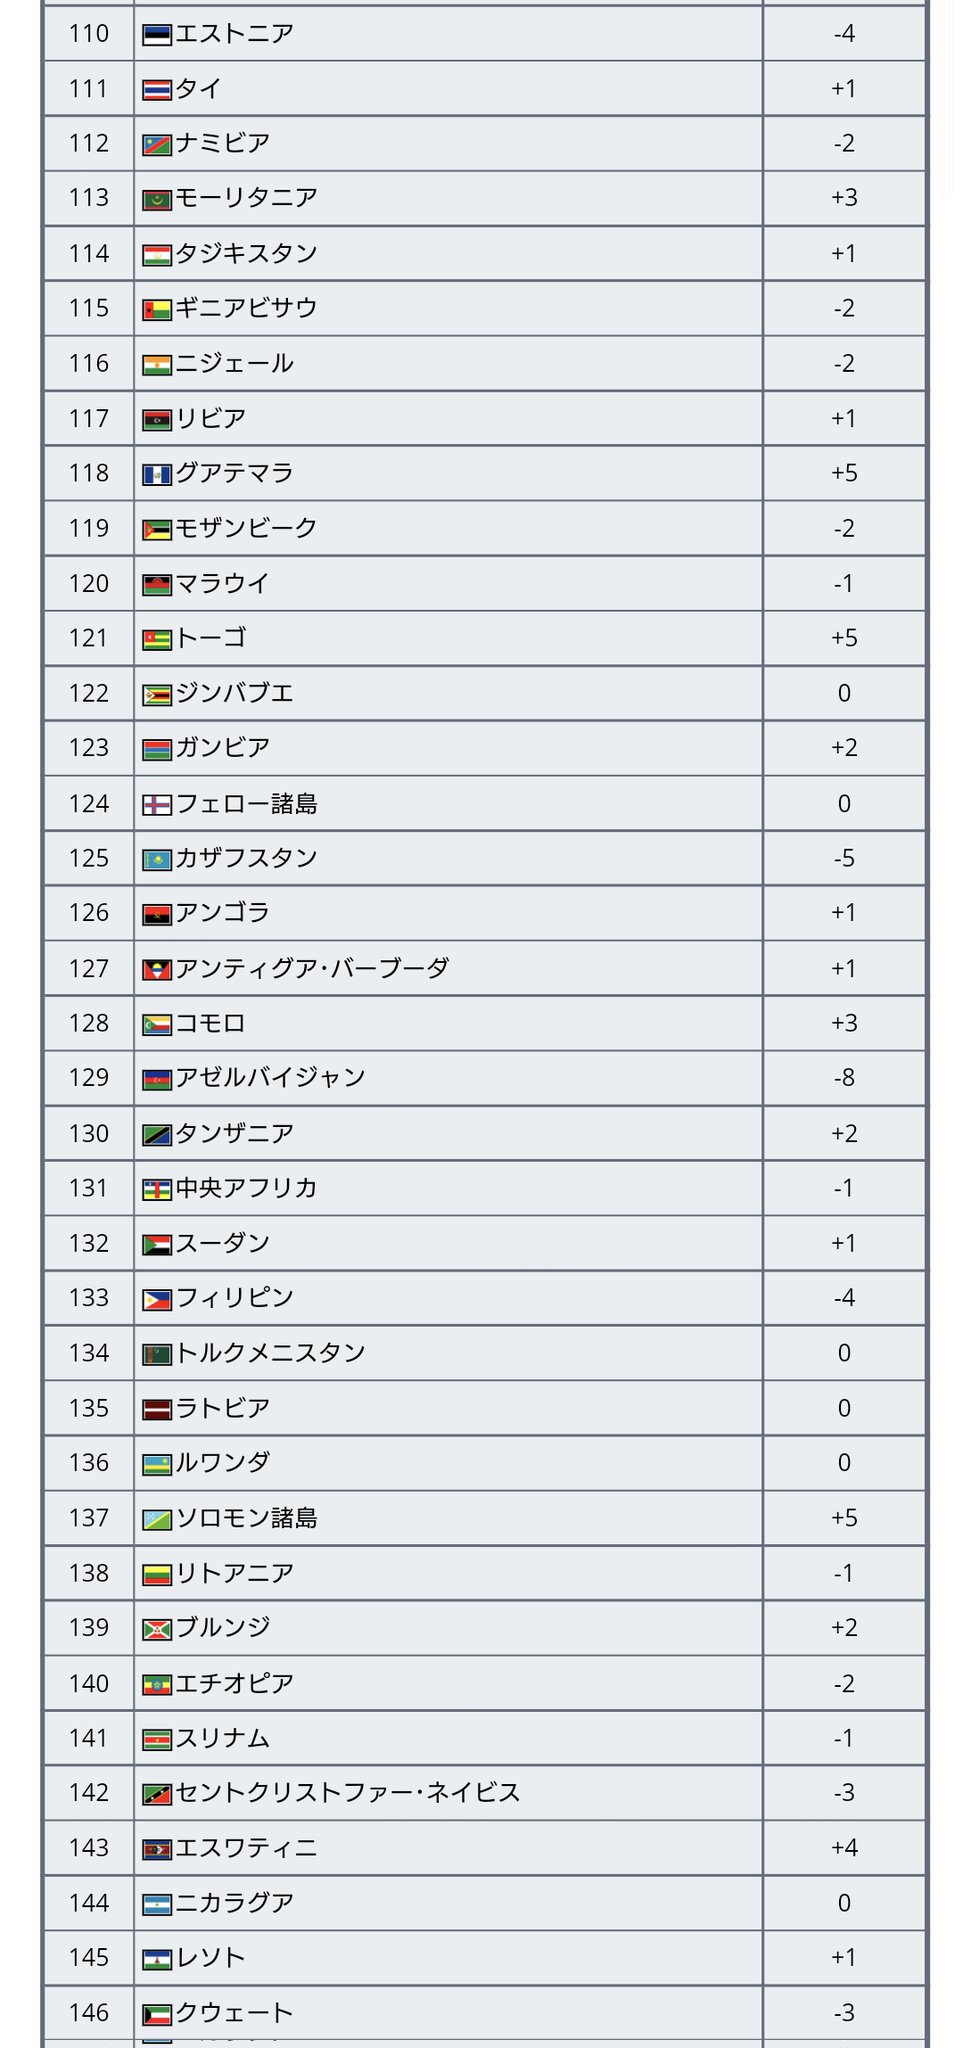 ワールドサッカー代表戦 アジアのfifaランク トップ10 1 21位 イラン 2 23位 日本 3 29位 韓国 4 42位 オーストラリア 5 49位 サウジアラビア 6 51位 カタール 7 68位 Uae 8 72位 イラク 9 75位